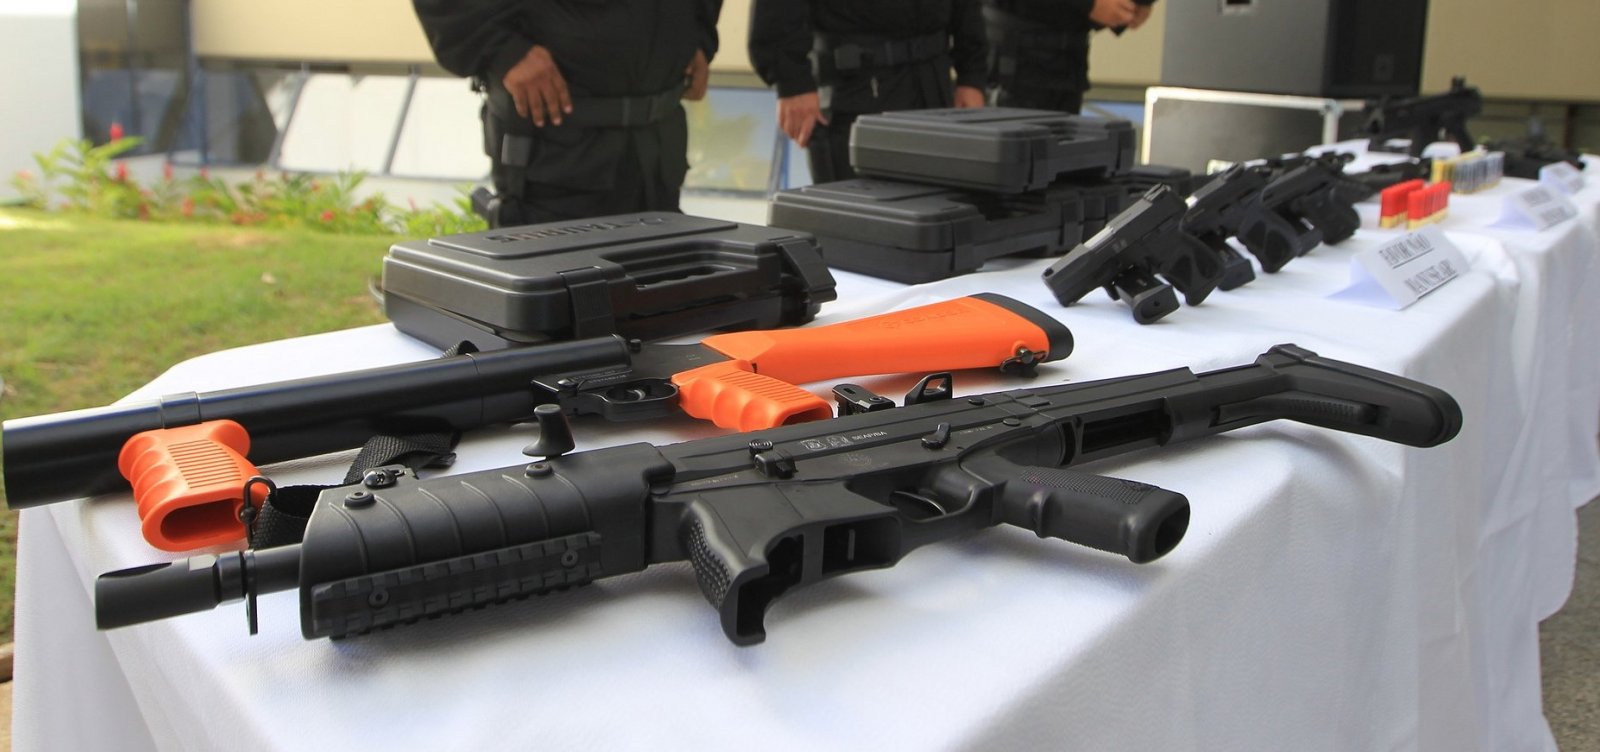 Agentes penitenciários da Bahia recebem armas de fogo para utilização no trabalho